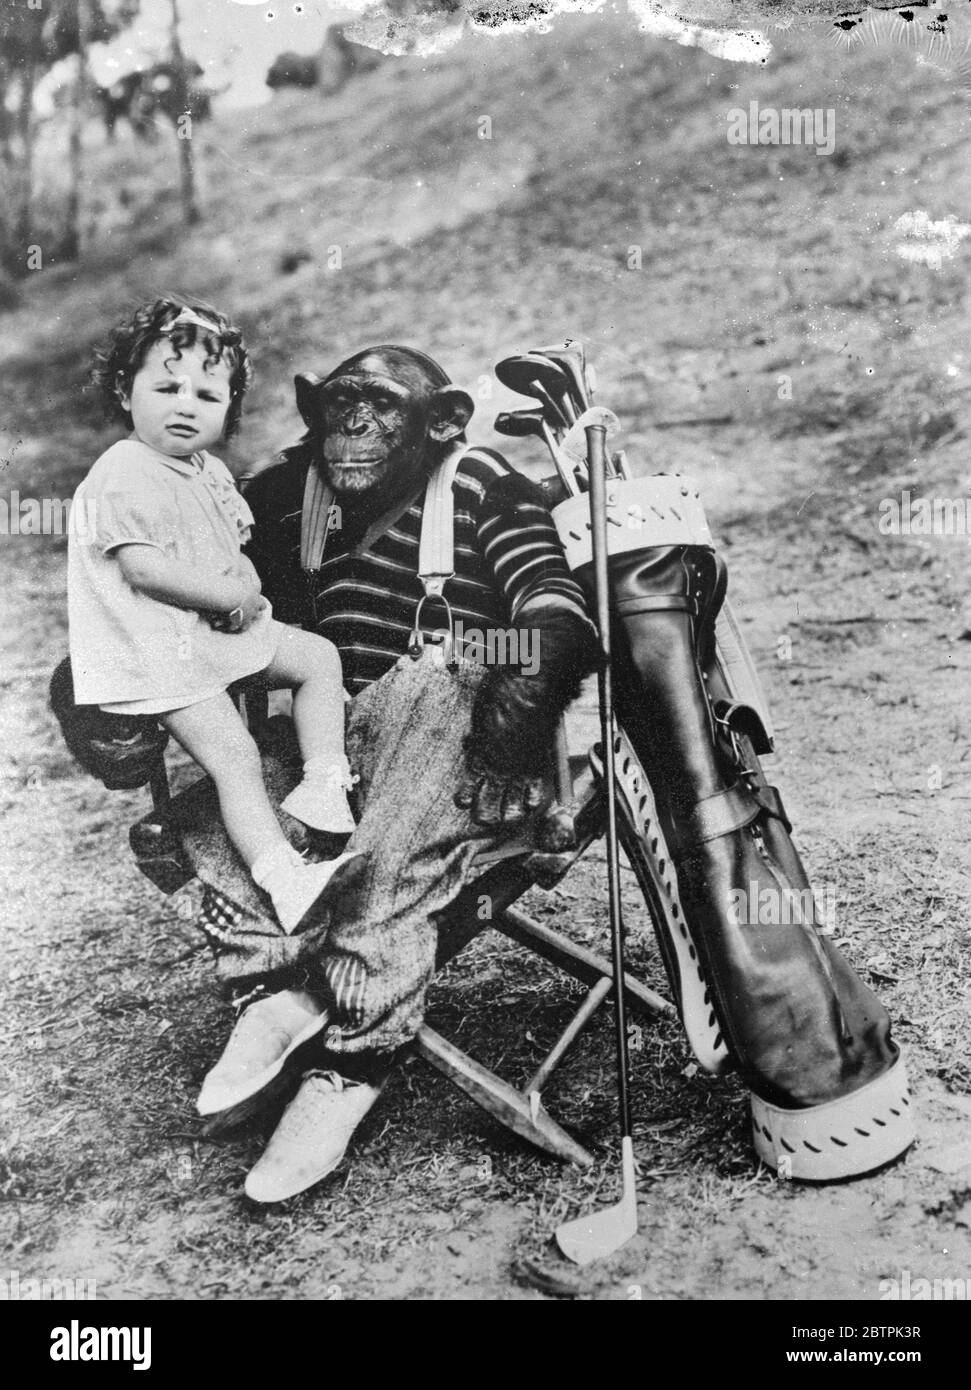 Golfen Schimpansen . Mit Baby Patsy, seinem Lieblingspartner, auf seinem Knie Jiggs, Hollywood berühmten Golfen Schimpansen, ruht während einer strenous Runde auf dem Hollywood-Kurs. Sowohl Jiggs als auch Baby Patsy erschienen in den berühmten Our Gang Komödien. Januar 1936 Stockfoto